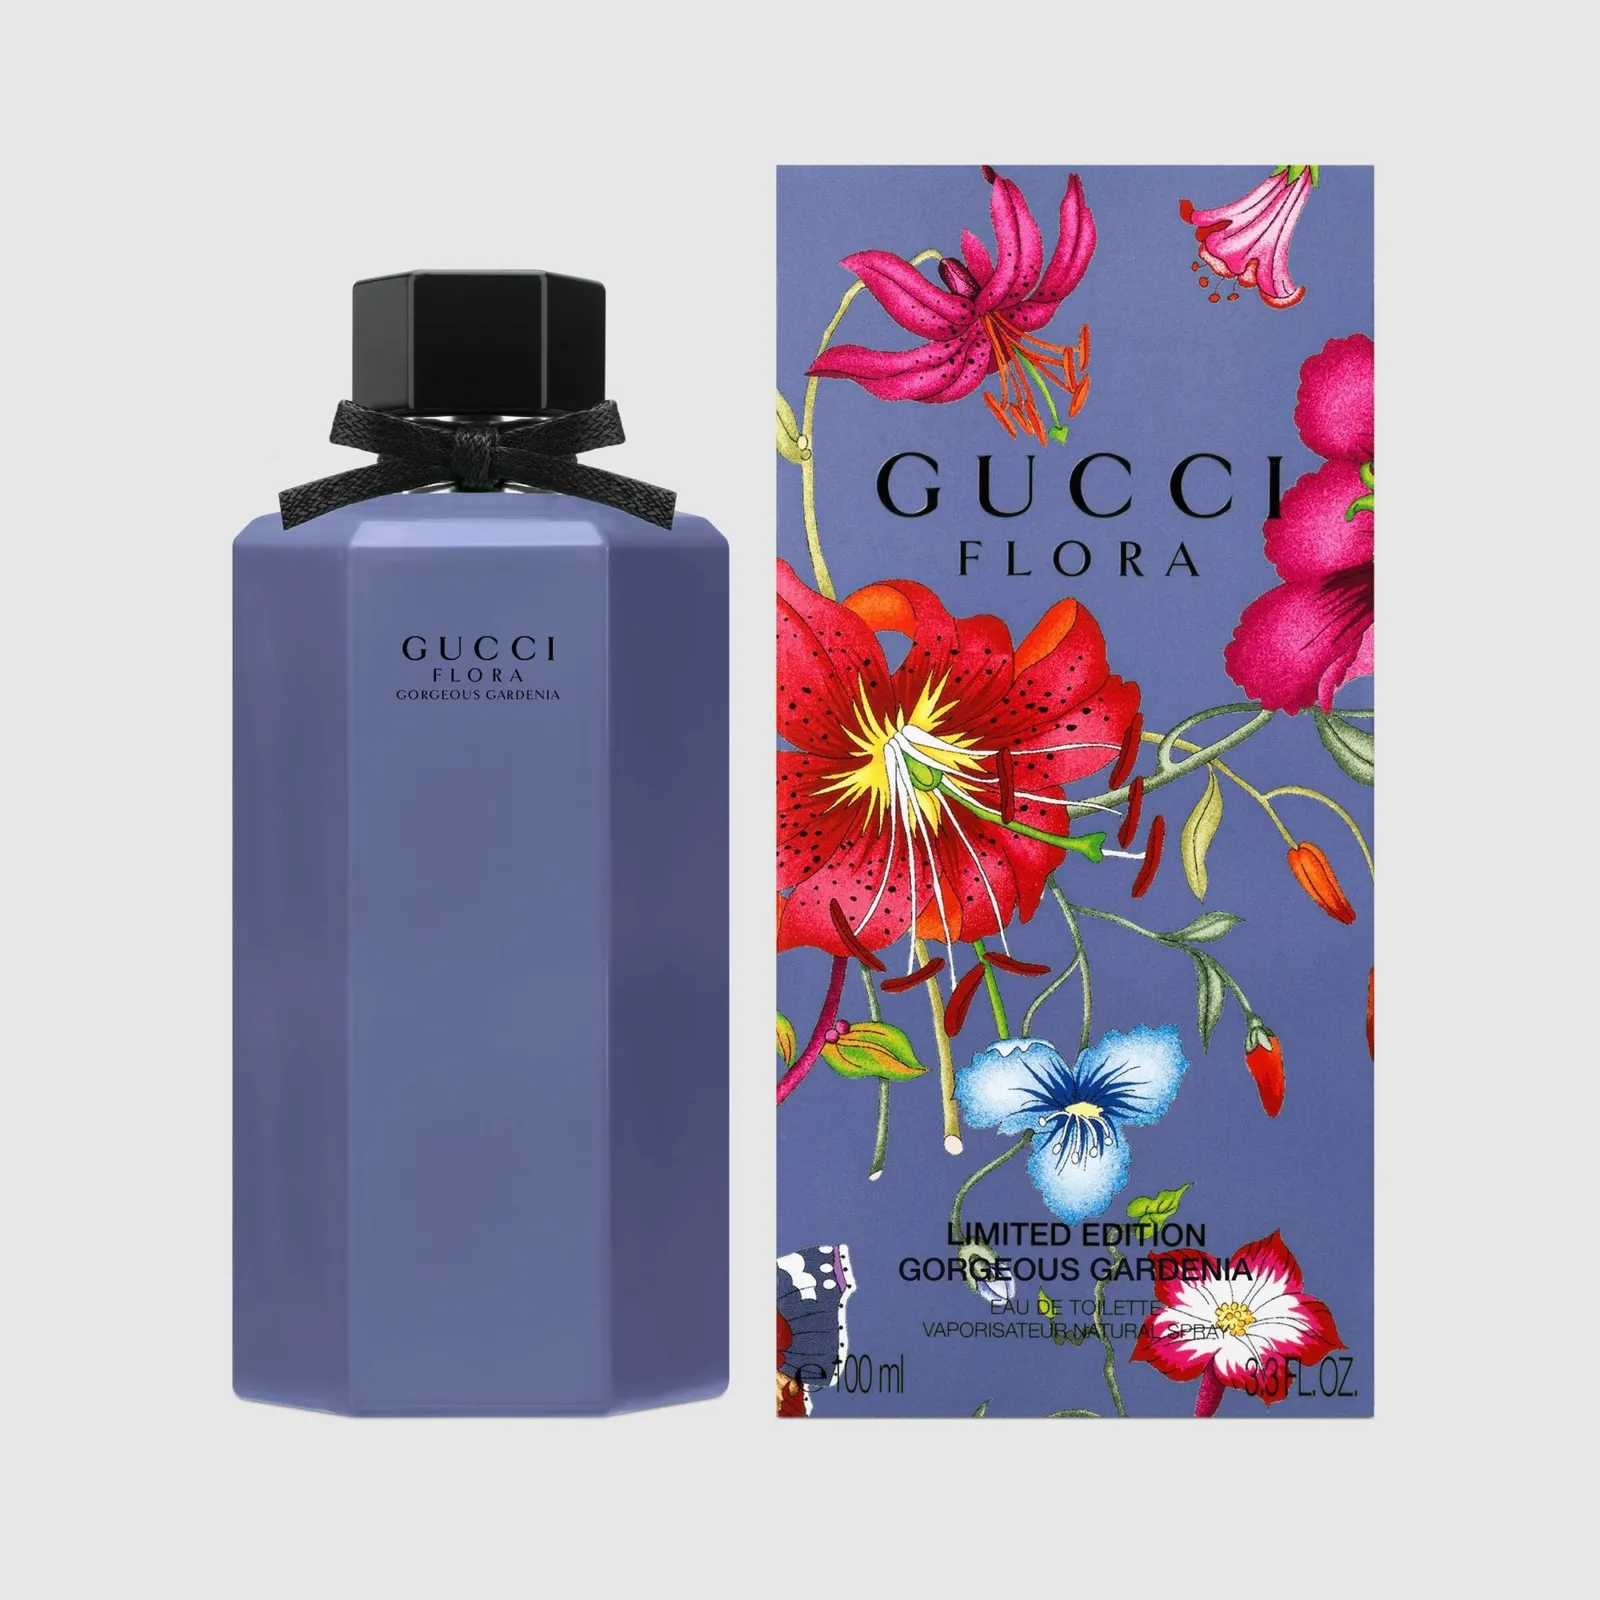 Gucci Flora Limited Edition Gorgeous Gardenia Eau de Toilette